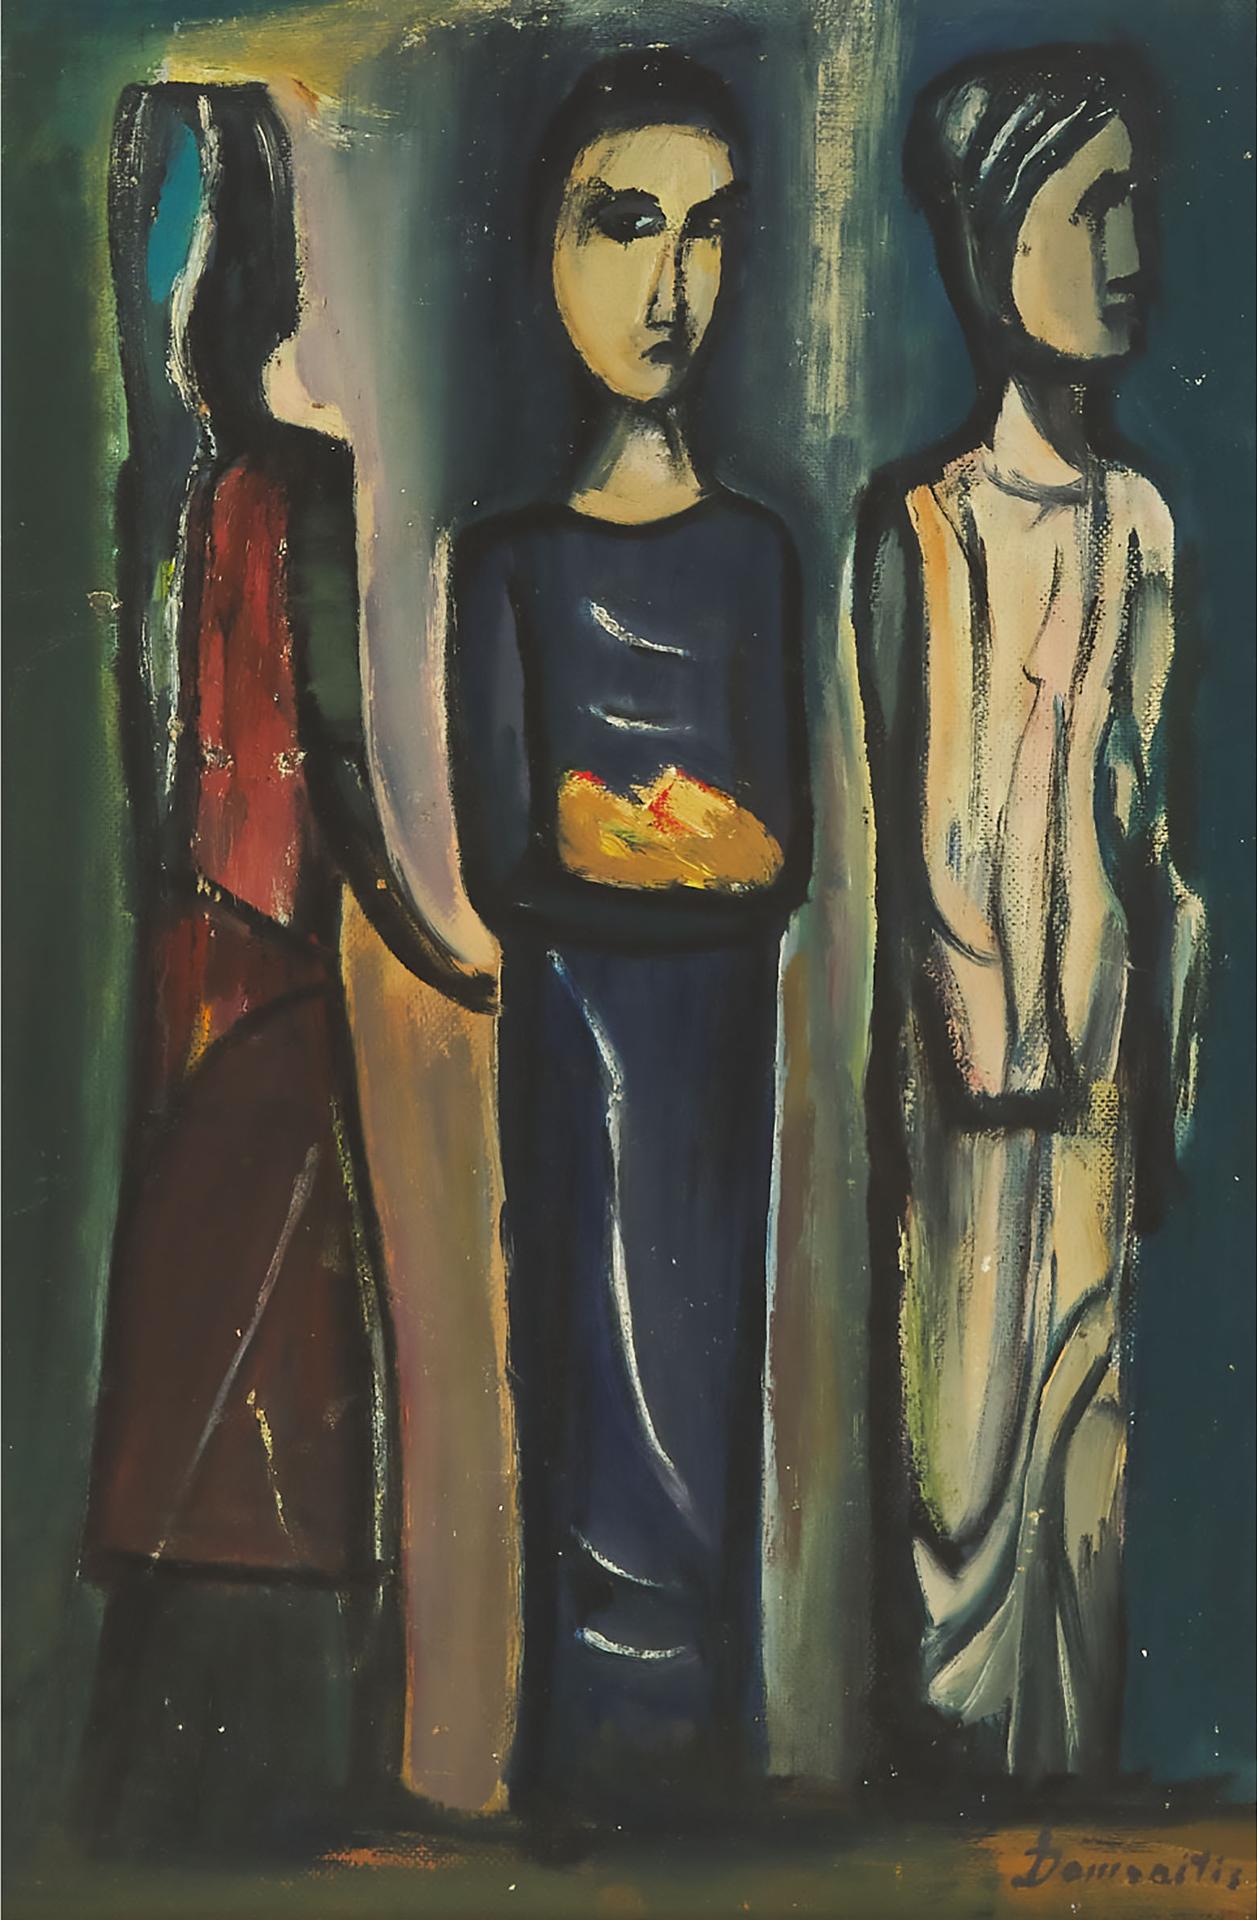 Pranas Domsaitis - Three Figures, 1953